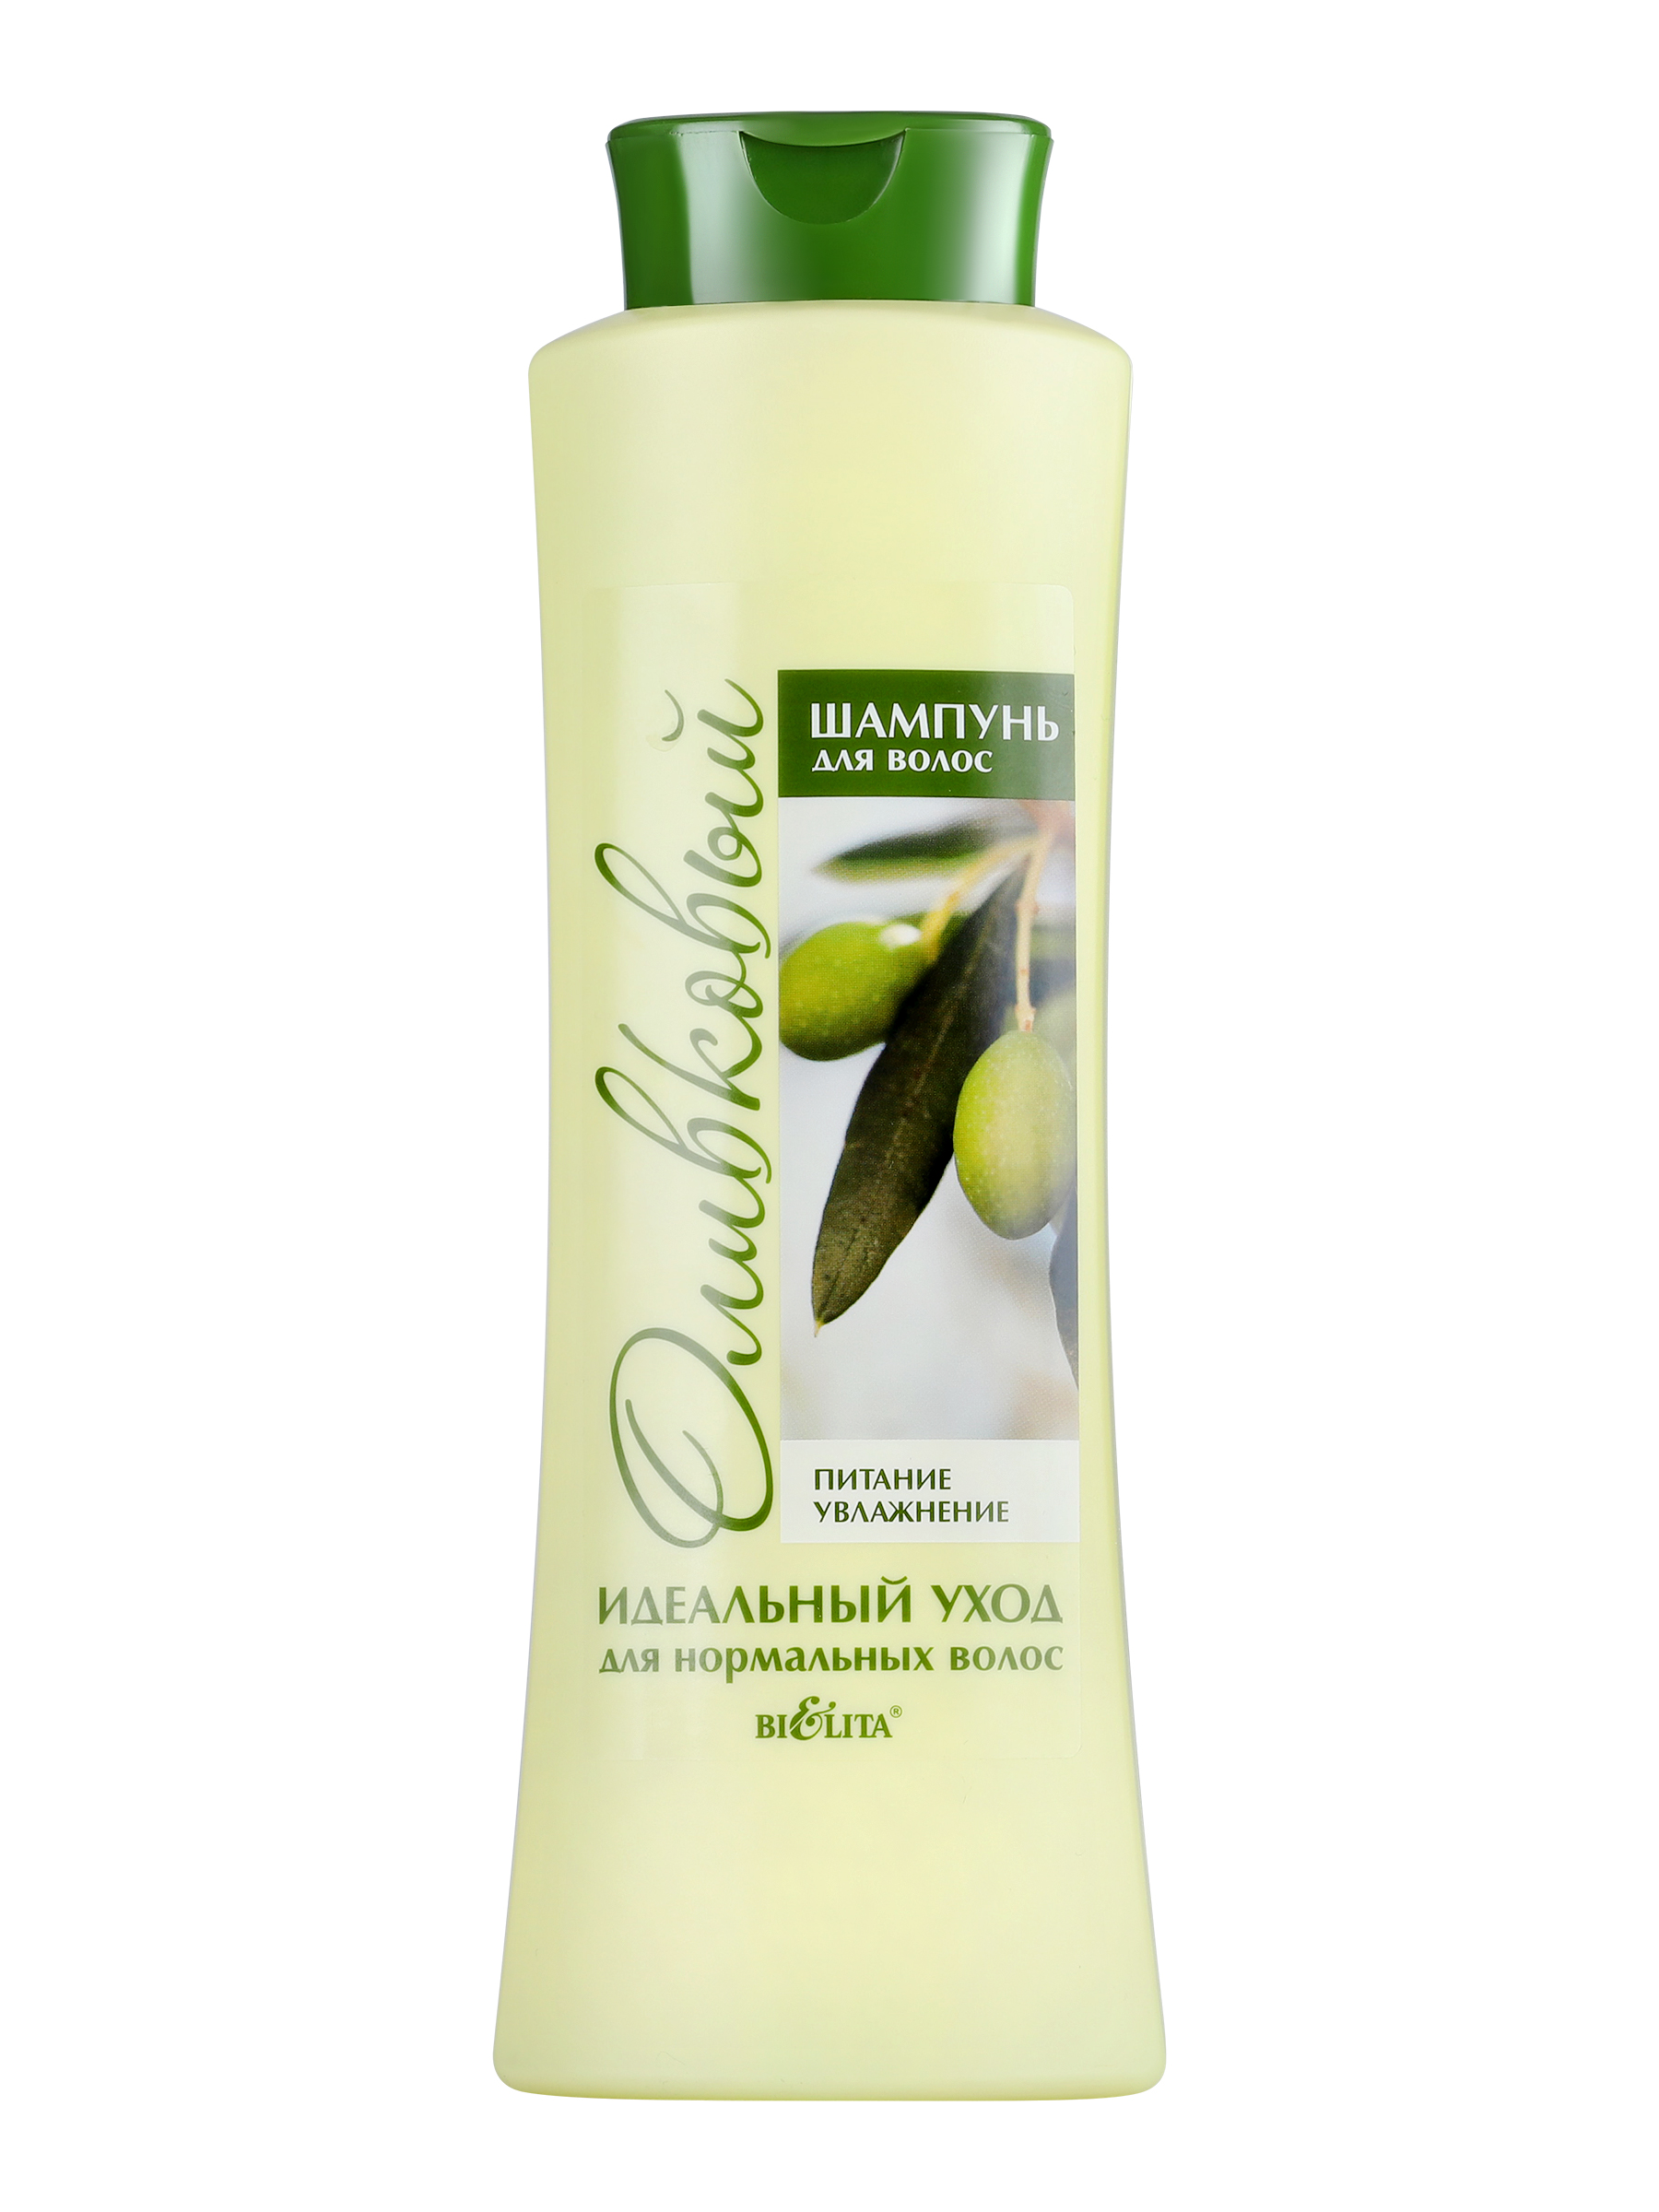 Шампунь для волос Bielita оливковый, для нормальных волос, 500 мл